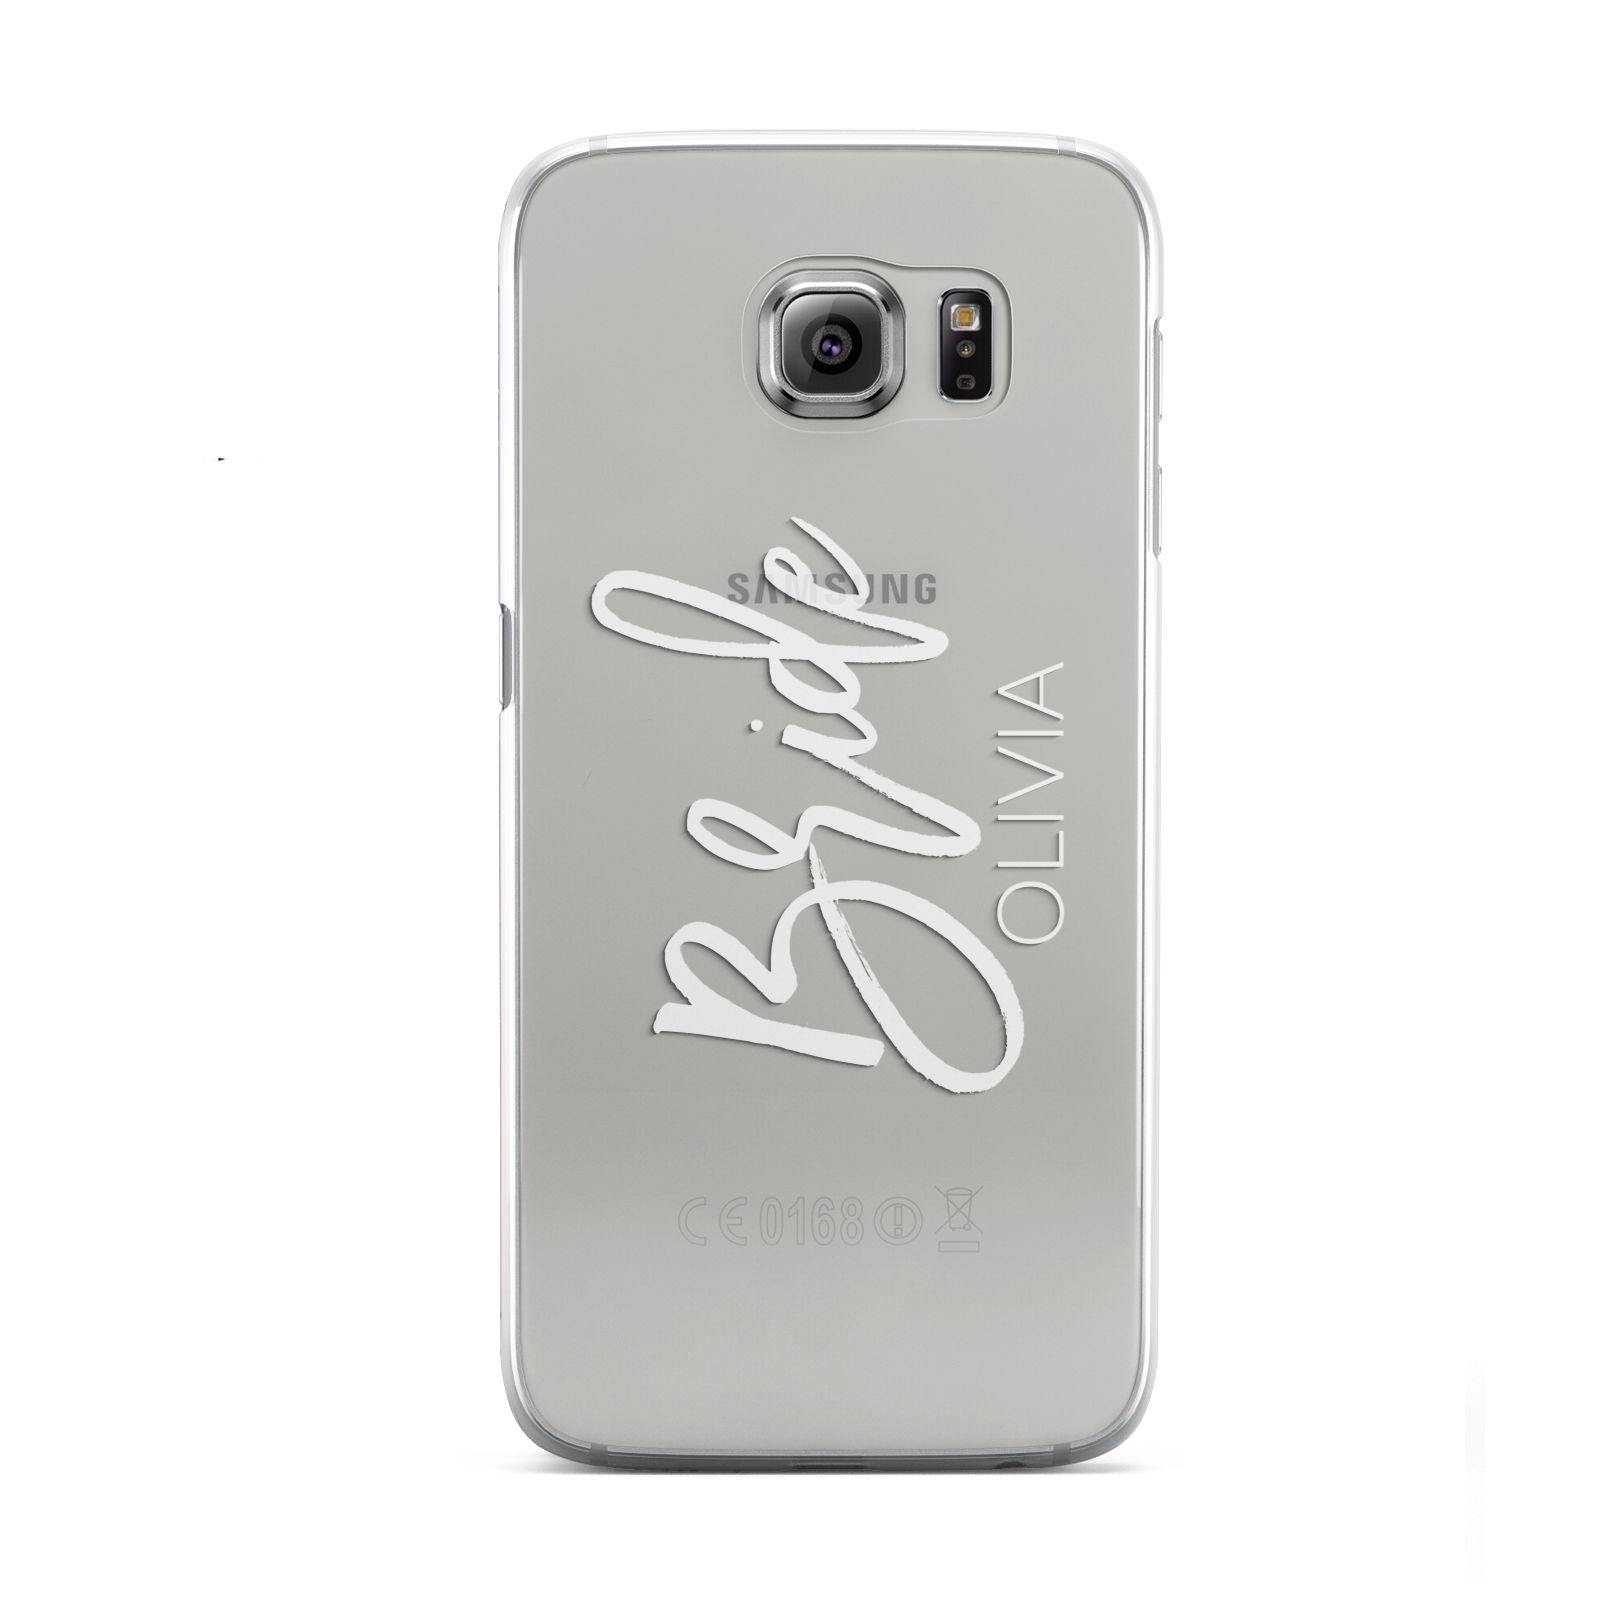 Personalised Bride Samsung Galaxy S6 Case